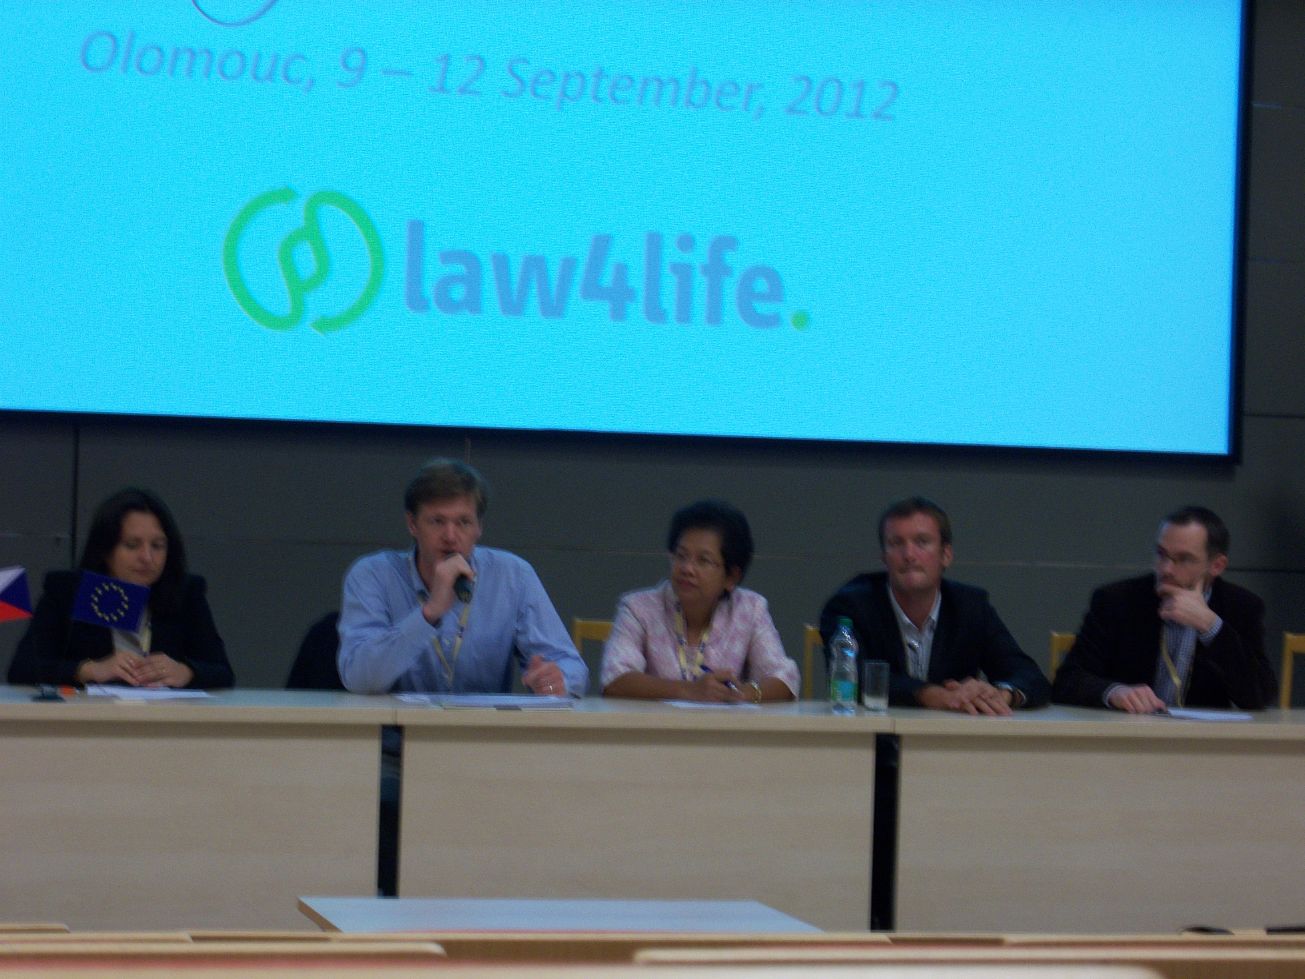 การประชุมนานาชาติเรื่อง Complex Law Teaching: Knowledge, Skills, and Values ณ เมือง Olomouc สาธารณรัฐเช็ก